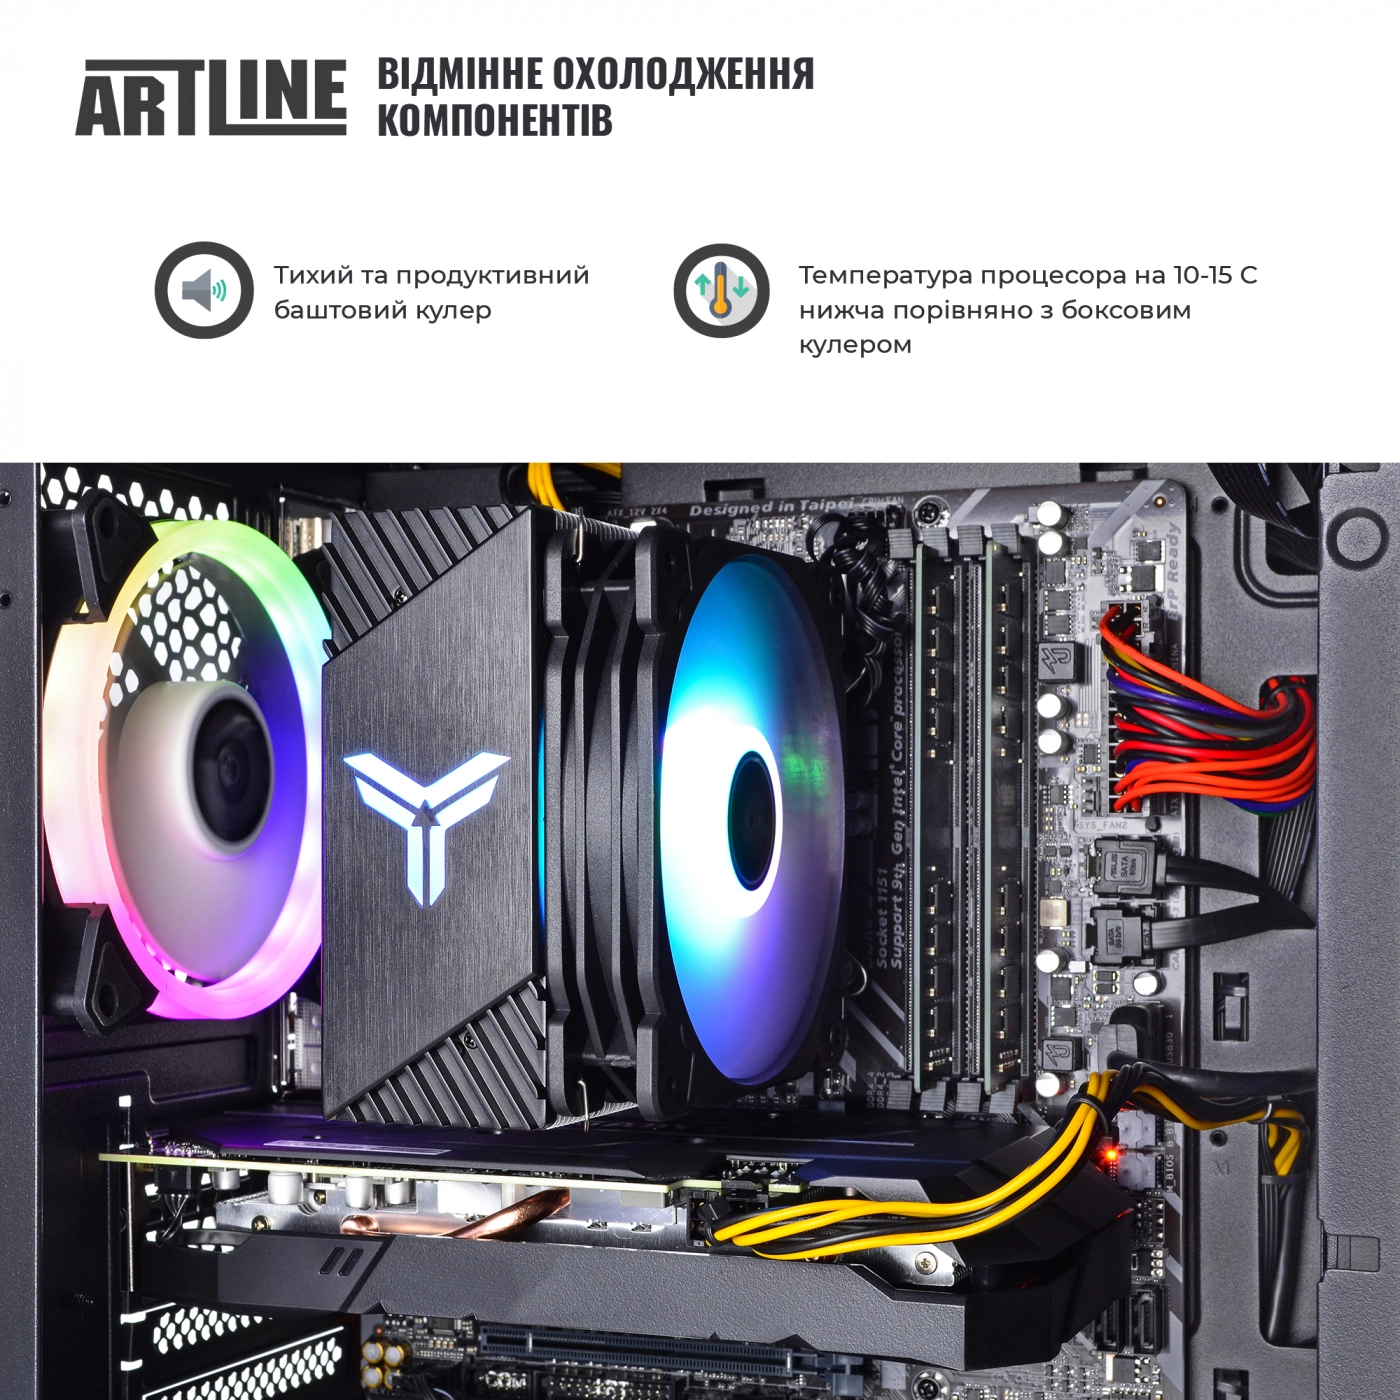 Купить Компьютер ARTLINE Gaming X71v30 - фото 4